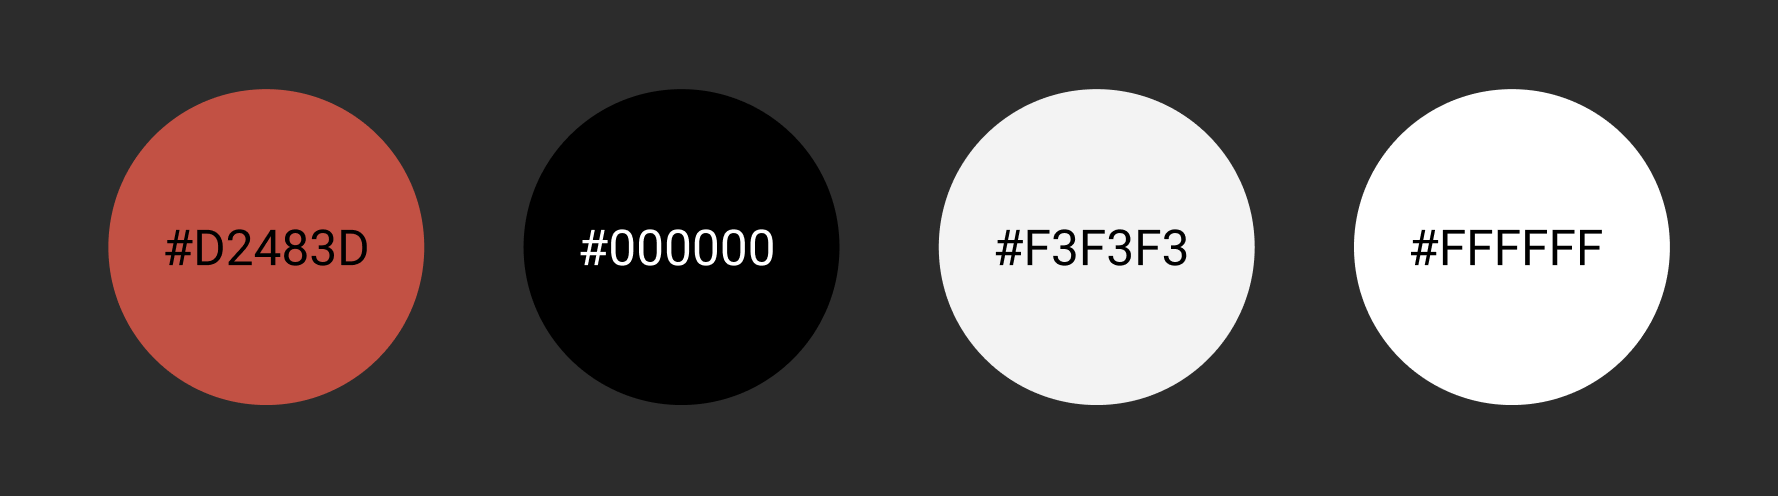 Quatre cercles avec les hex codes #D2483D (rouge), #000000 (noir), #F3F3F3 (gris), #FFFFFF (blanc).